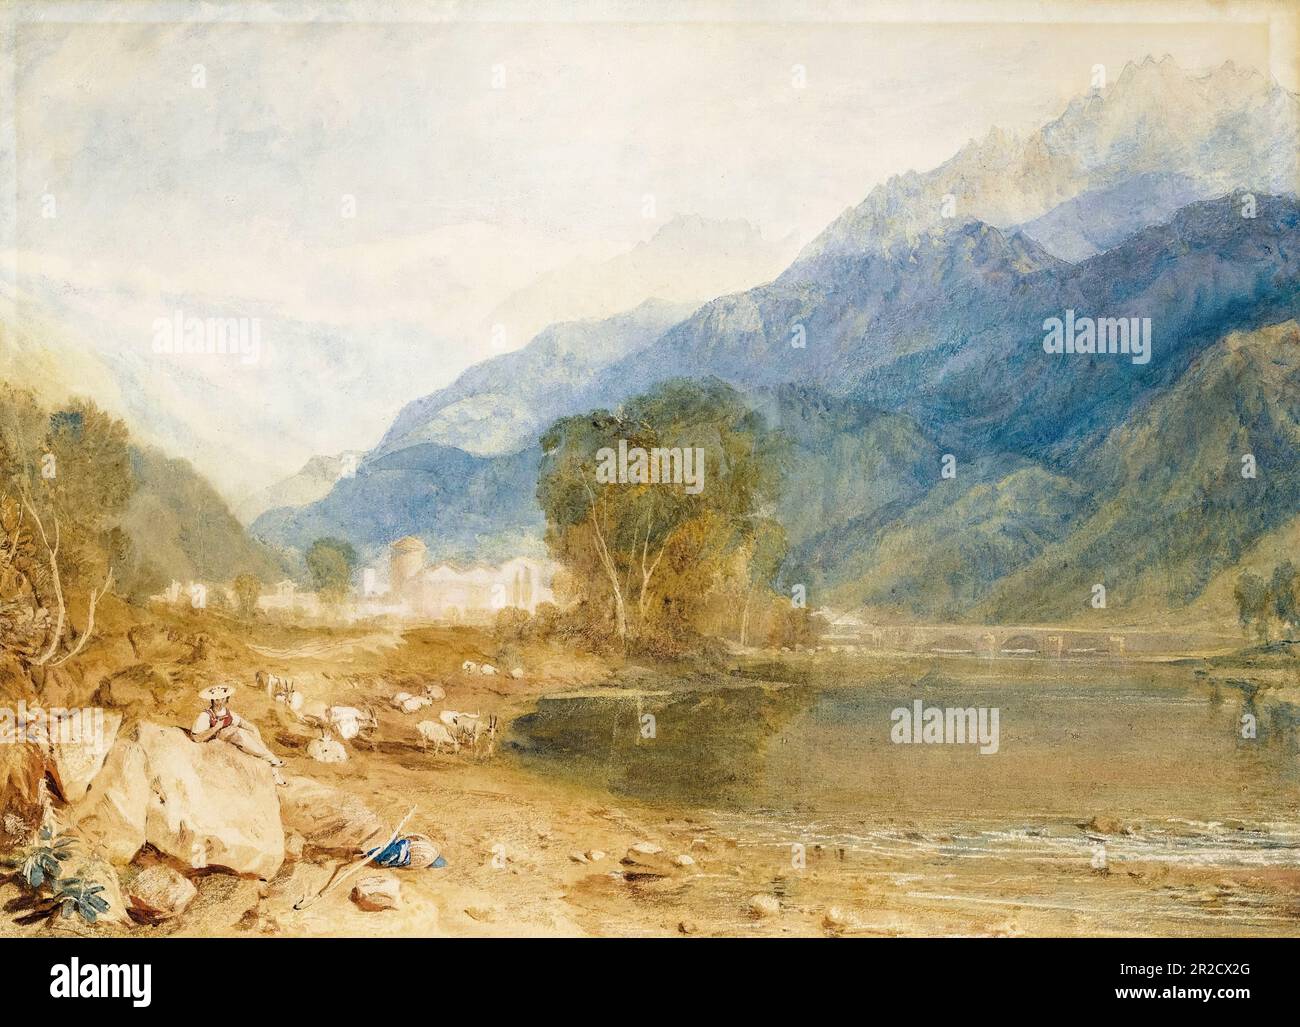 JMW Turner, Vue du château de St Michael, Bonneville, Savoie, des rives de la rivière Arve, peinture paysagère avant 1851 Banque D'Images